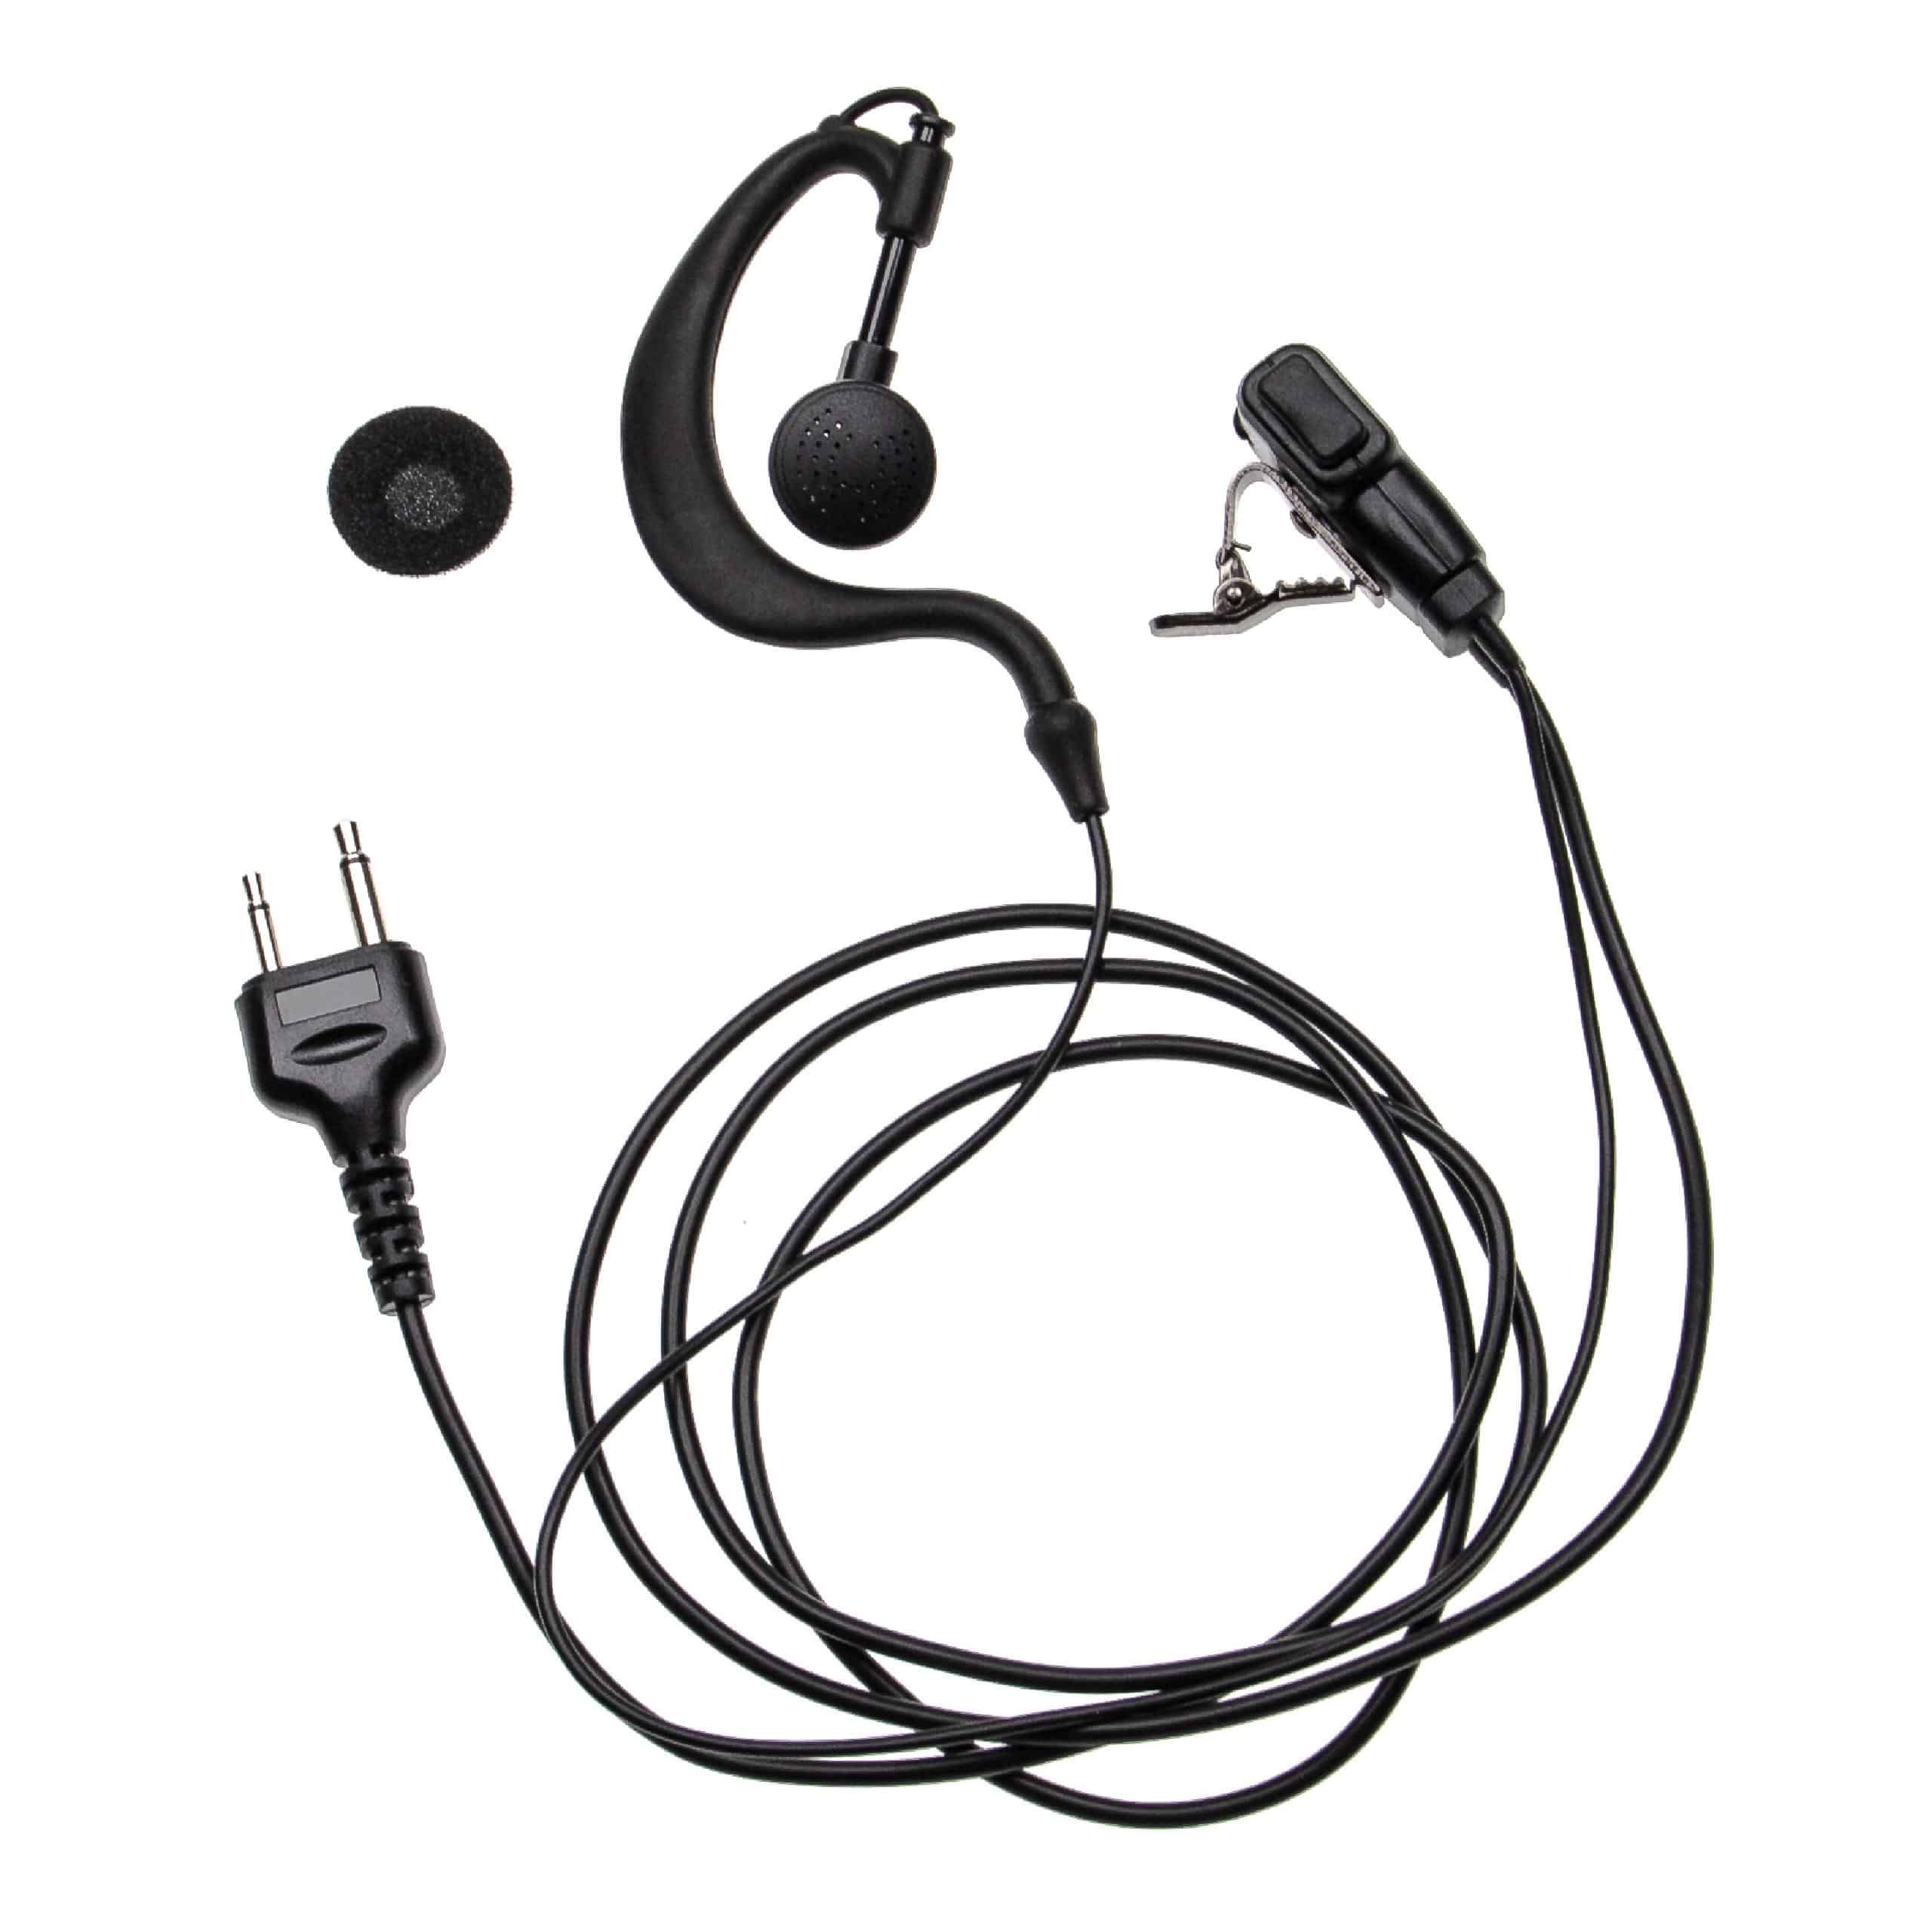 Security headset per diverse radio Intek ecc. - nero + pulsante chiamata + supporto clip